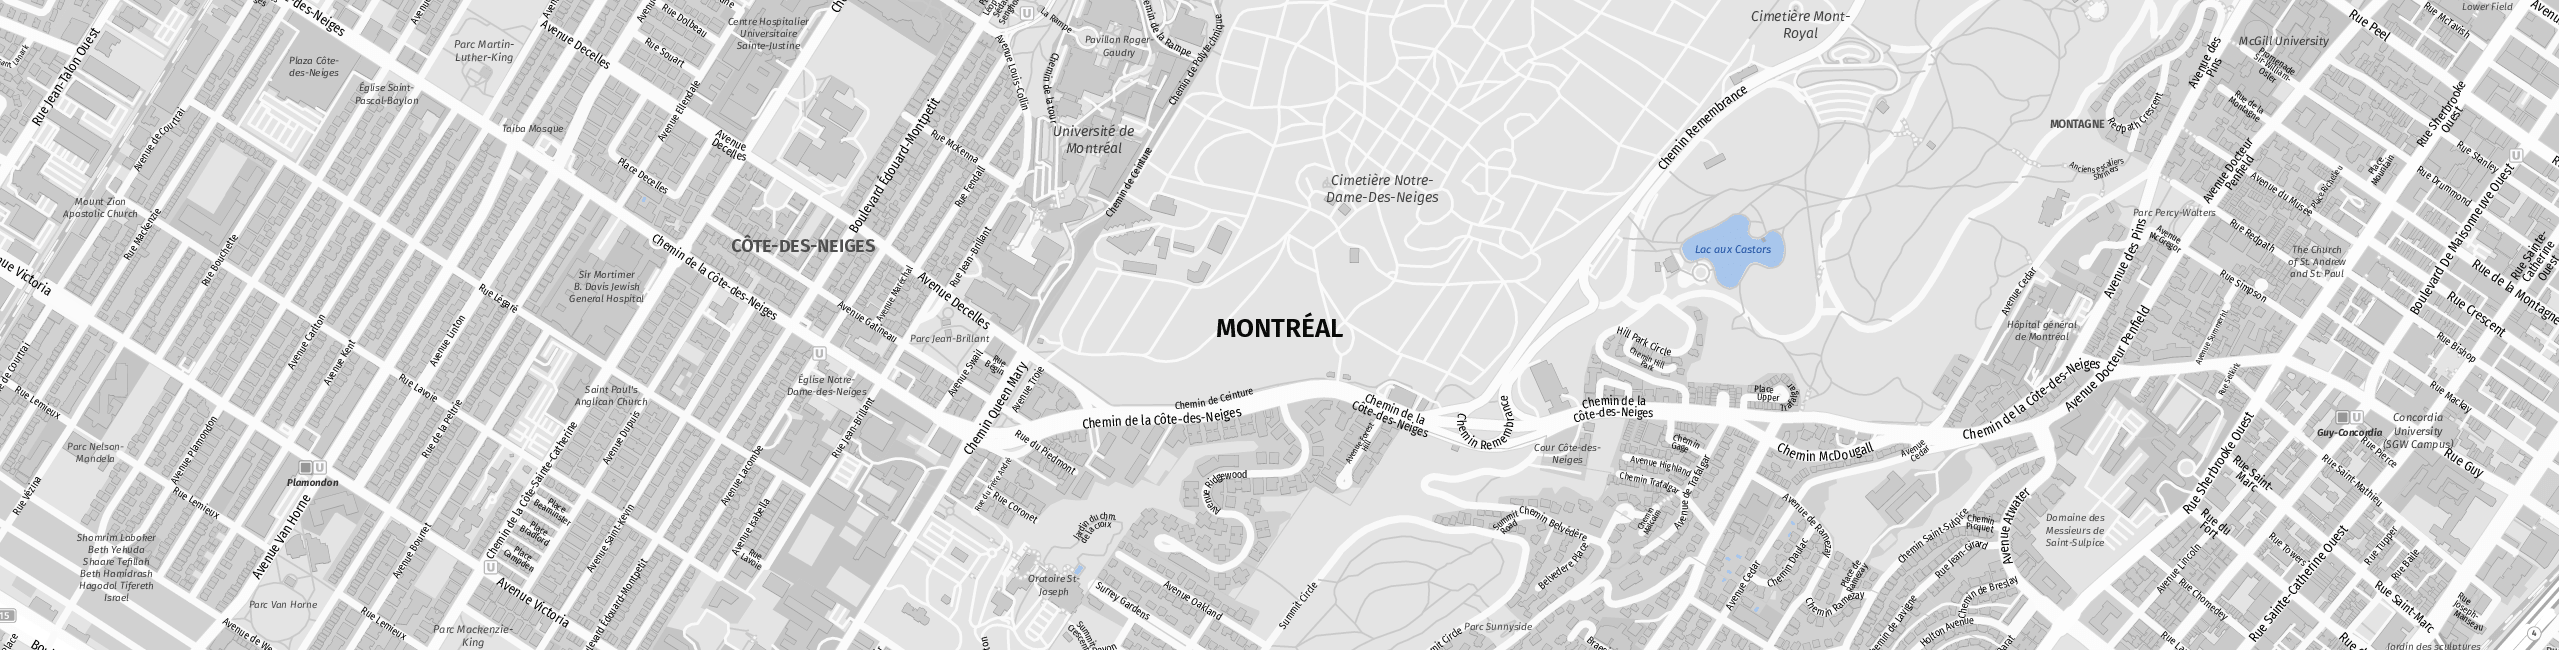 Stadtplan Montreal zum Downloaden.